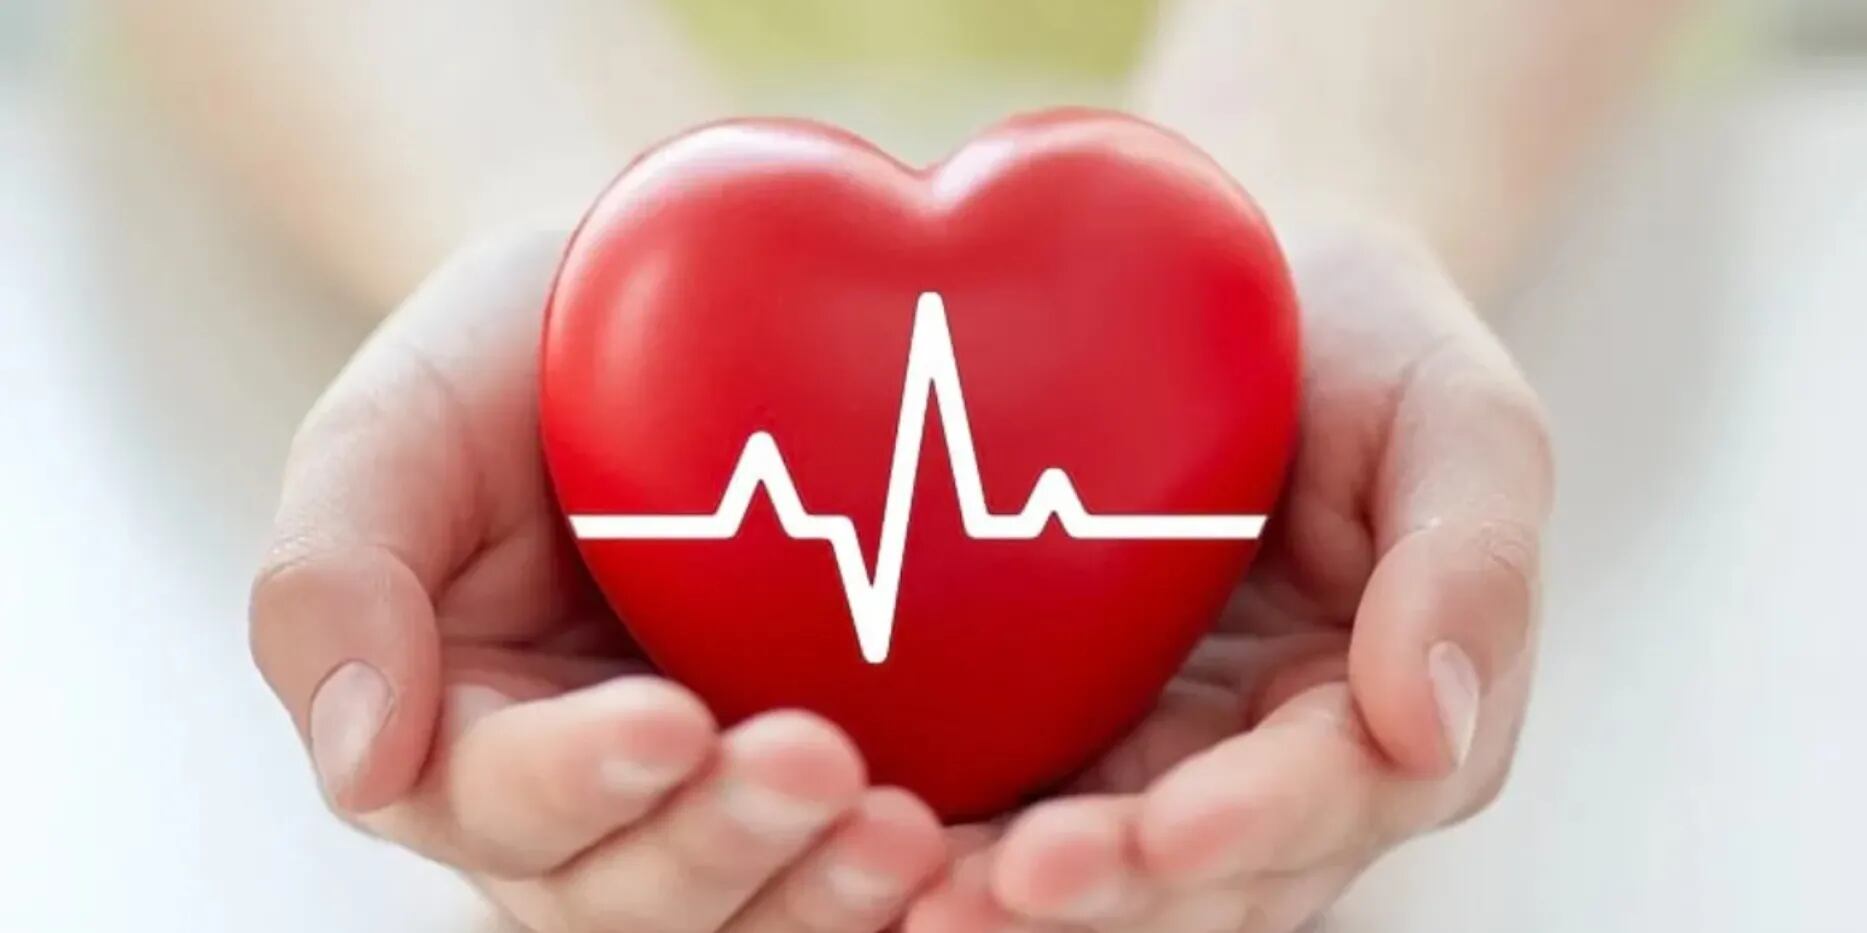 Enfermedades cardiovasculares: qué son, cómo se originan y qué hábitos saludables las previenen